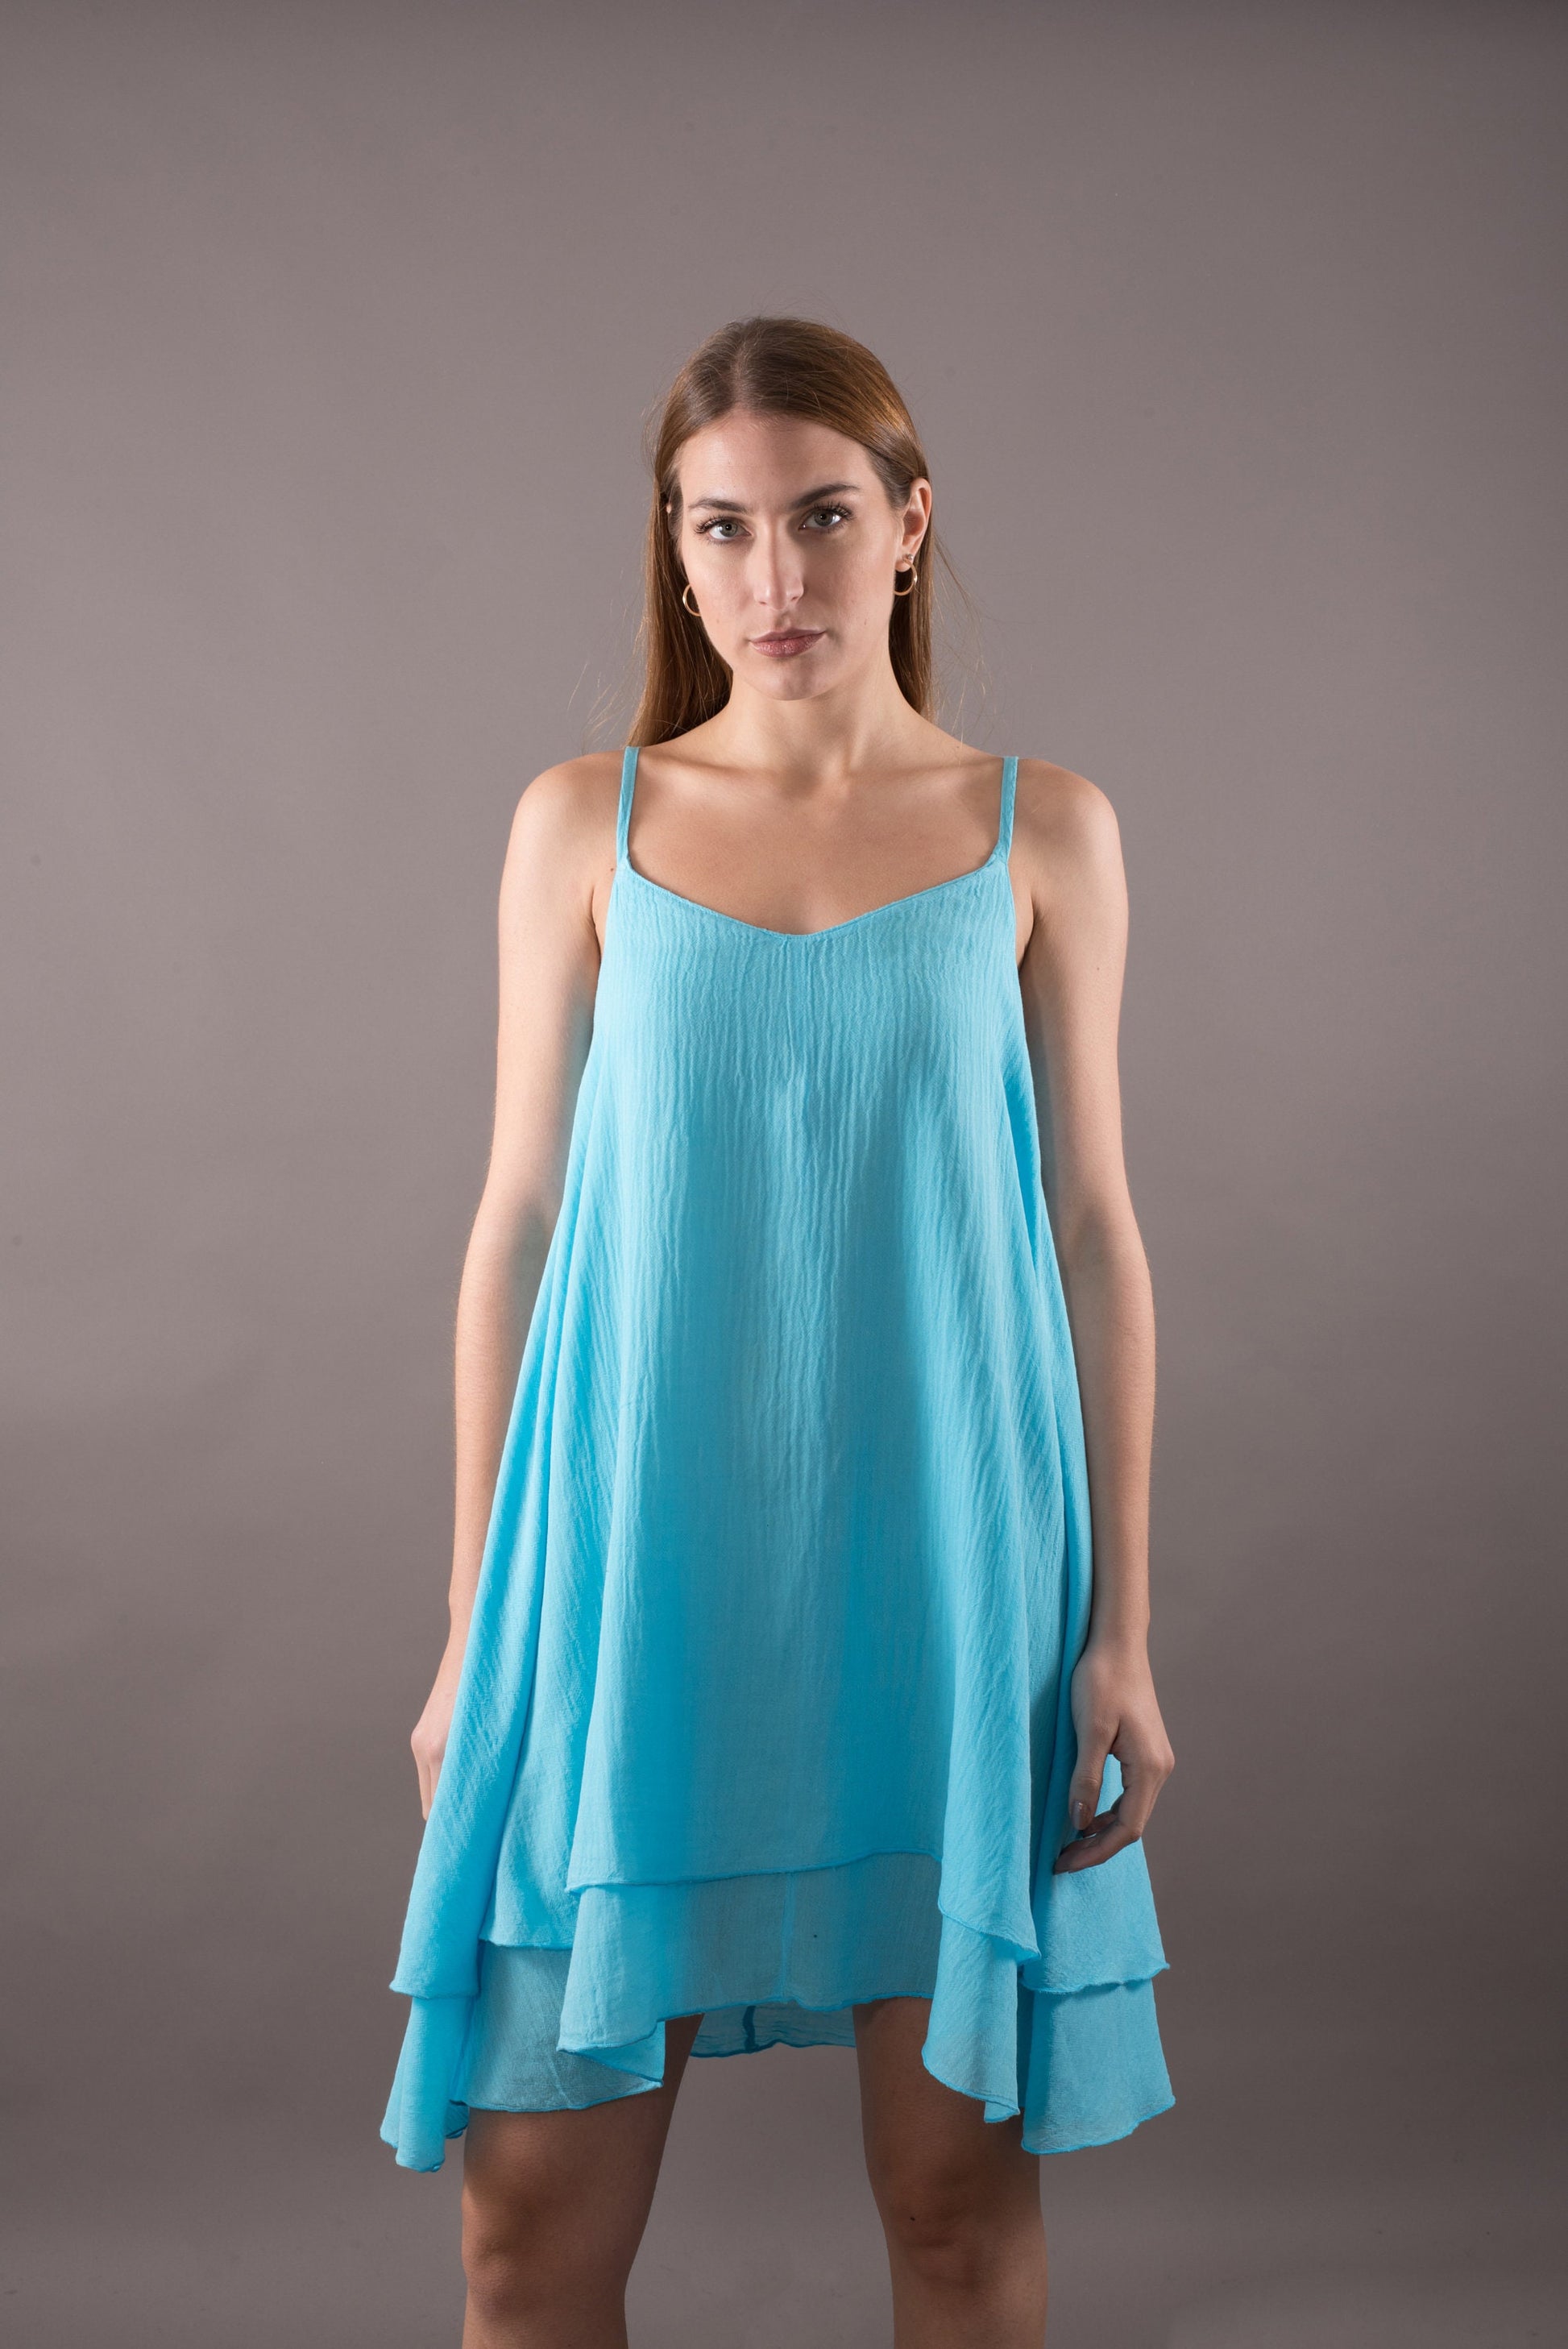 Women's spaghetti strap top dress, Gauze sundress, Summer cotton dress, Backless dress, Asymmetric dress